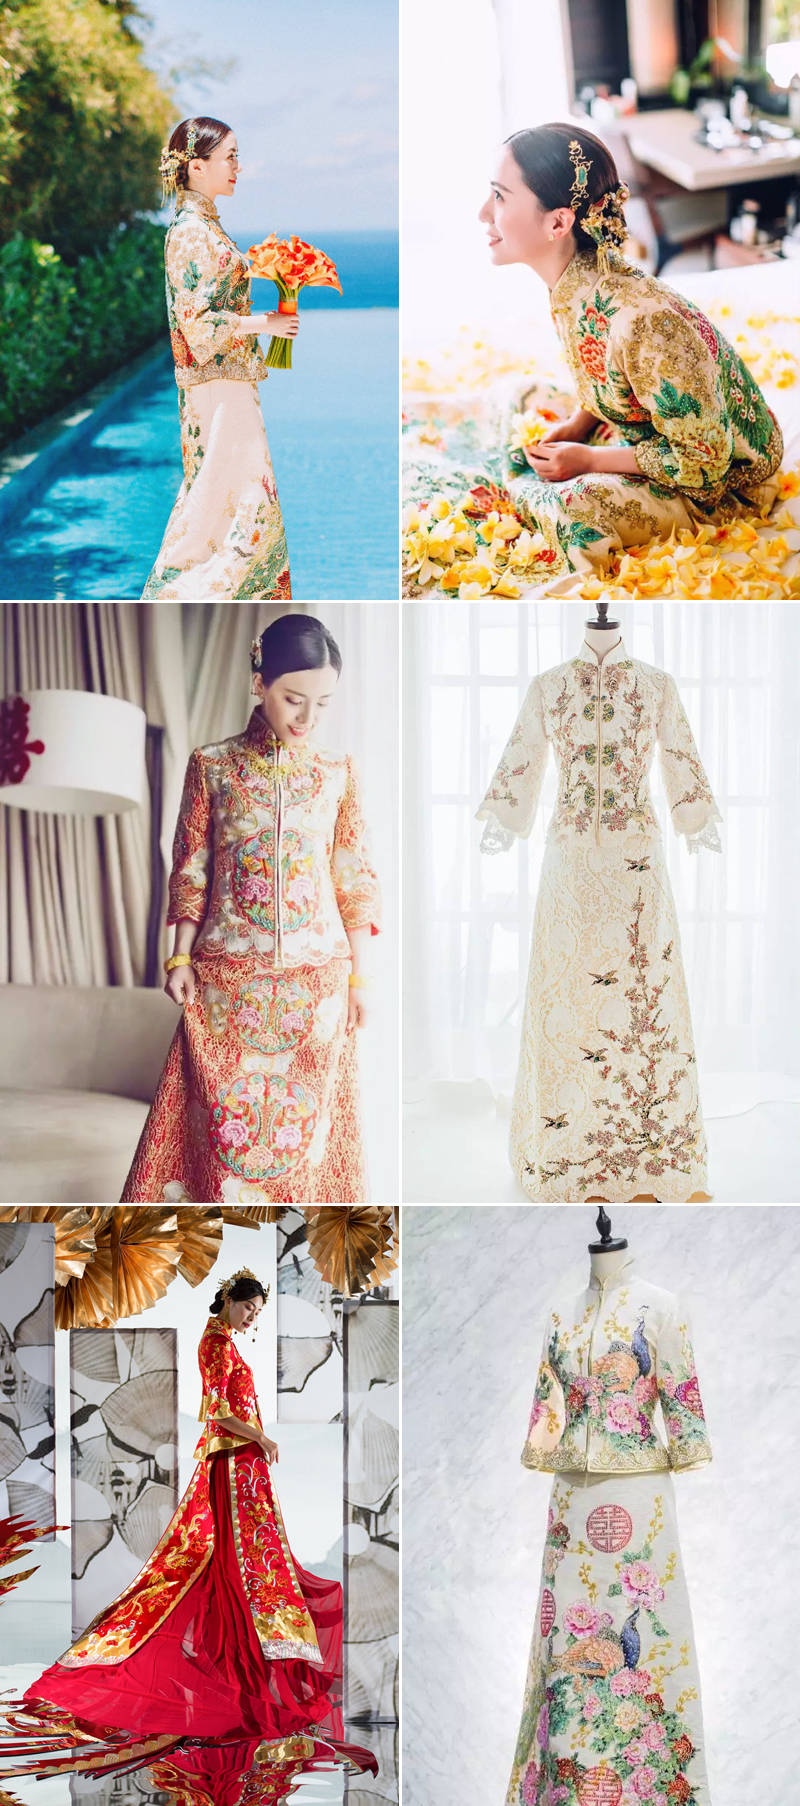 2021 New Chinese Traditional Wedding Dress - Fashion Hanfu